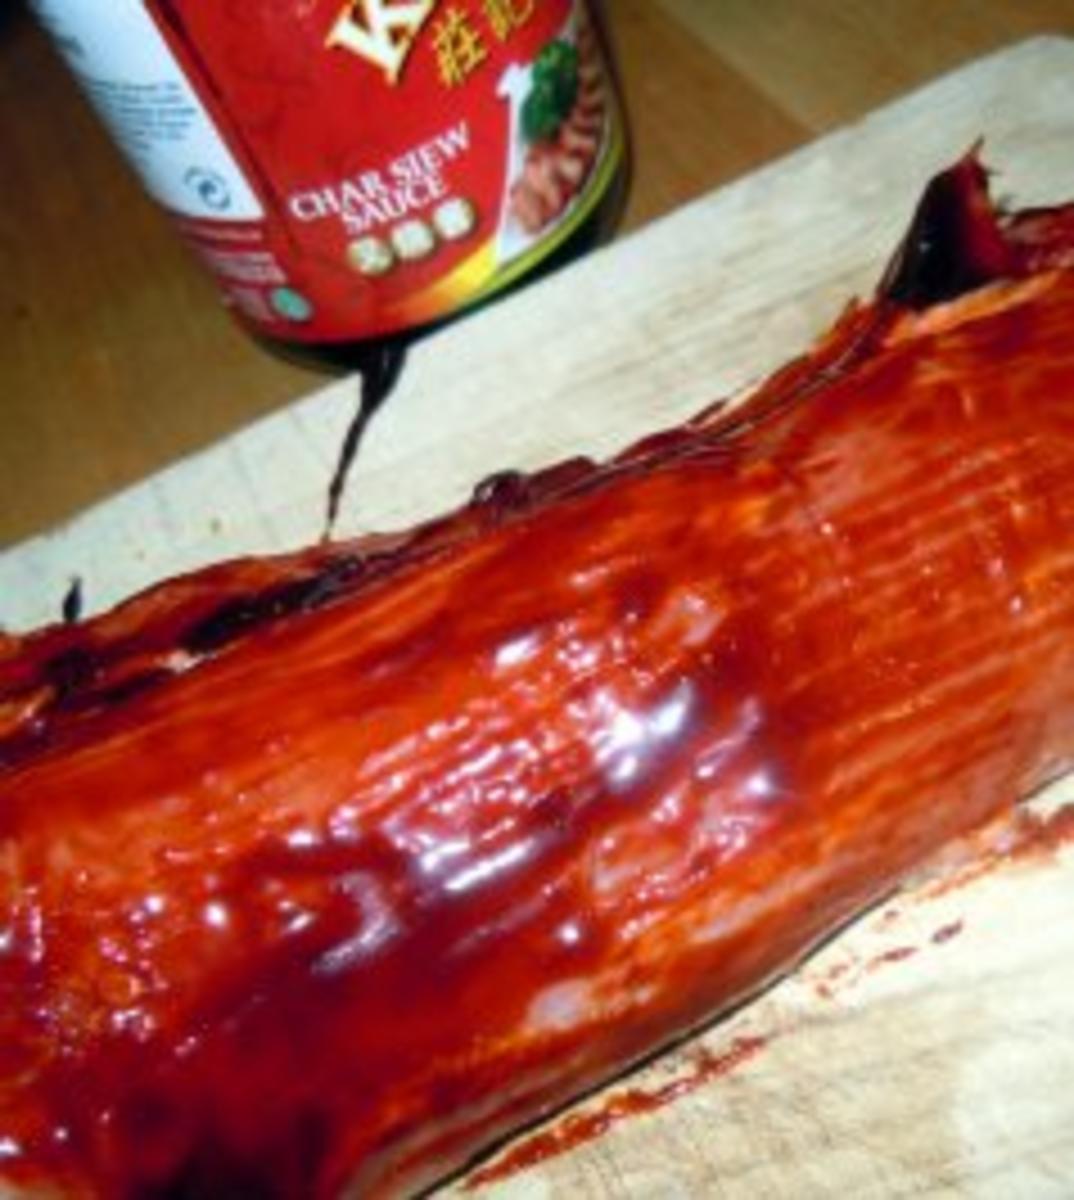 Schweinefilet "Char Siew" mit in Gemüsesauce geschwenkter Tagiatelle - Rezept - Bild Nr. 2